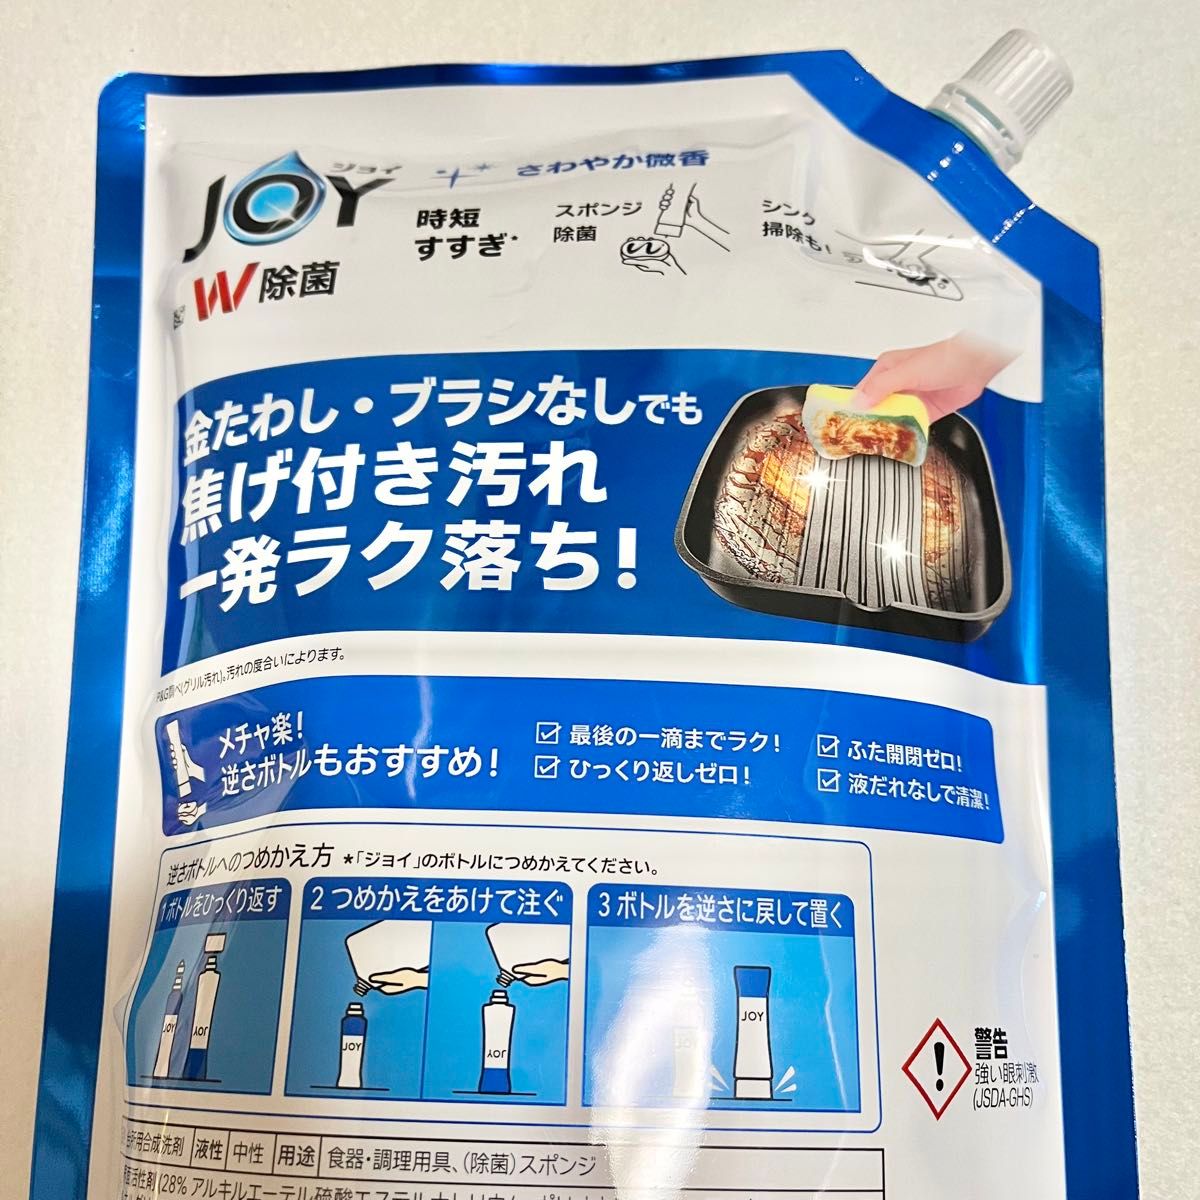 【新品未開封】ジョイ 食器洗い洗剤 詰め替え用 超特大 11回分 1425mL